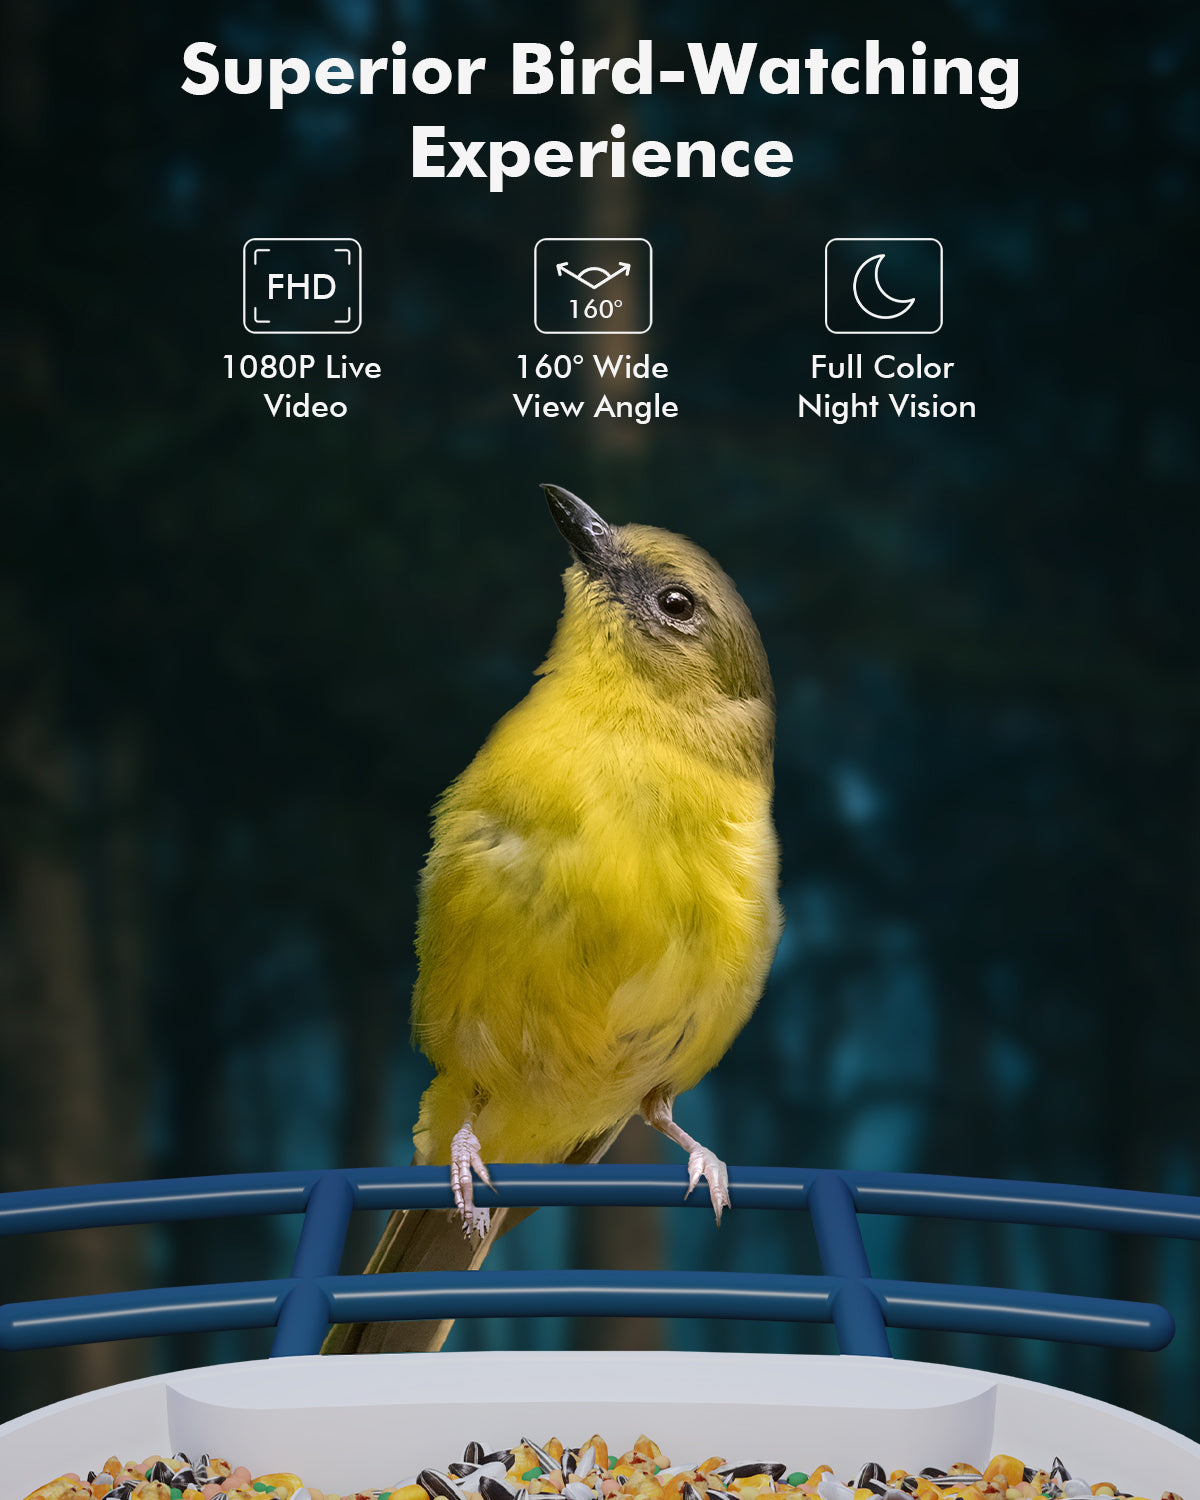 V5-bird-feeder-superior-bird-watching-experience